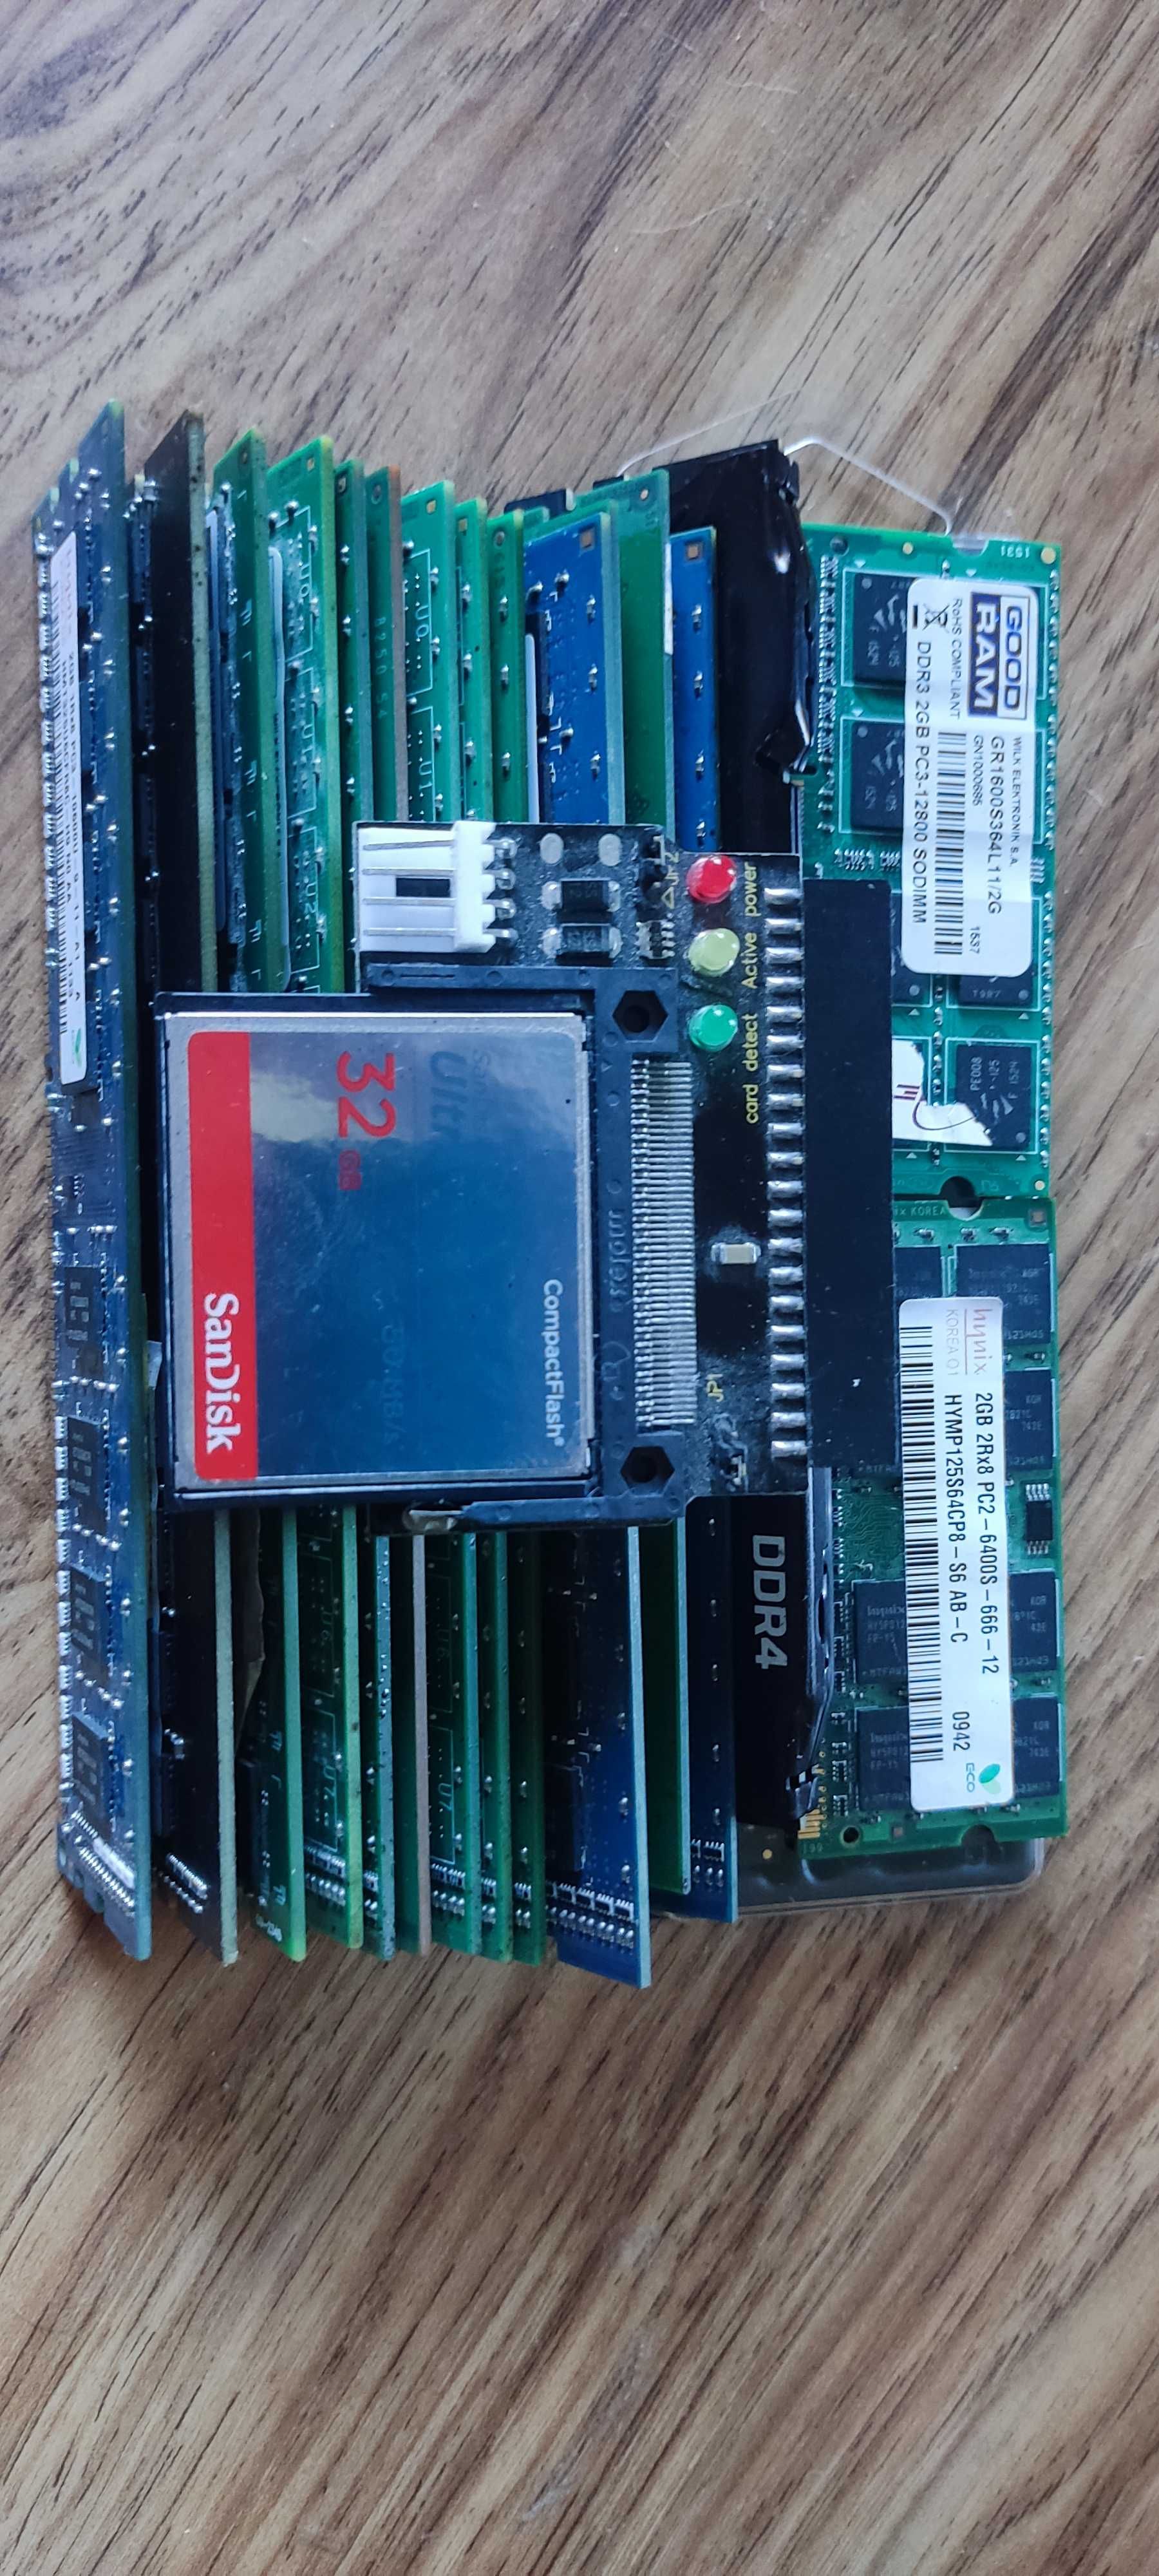 DDR2,DDR3,DDR4,SODIMM,Compact Flash в наличии. В описании